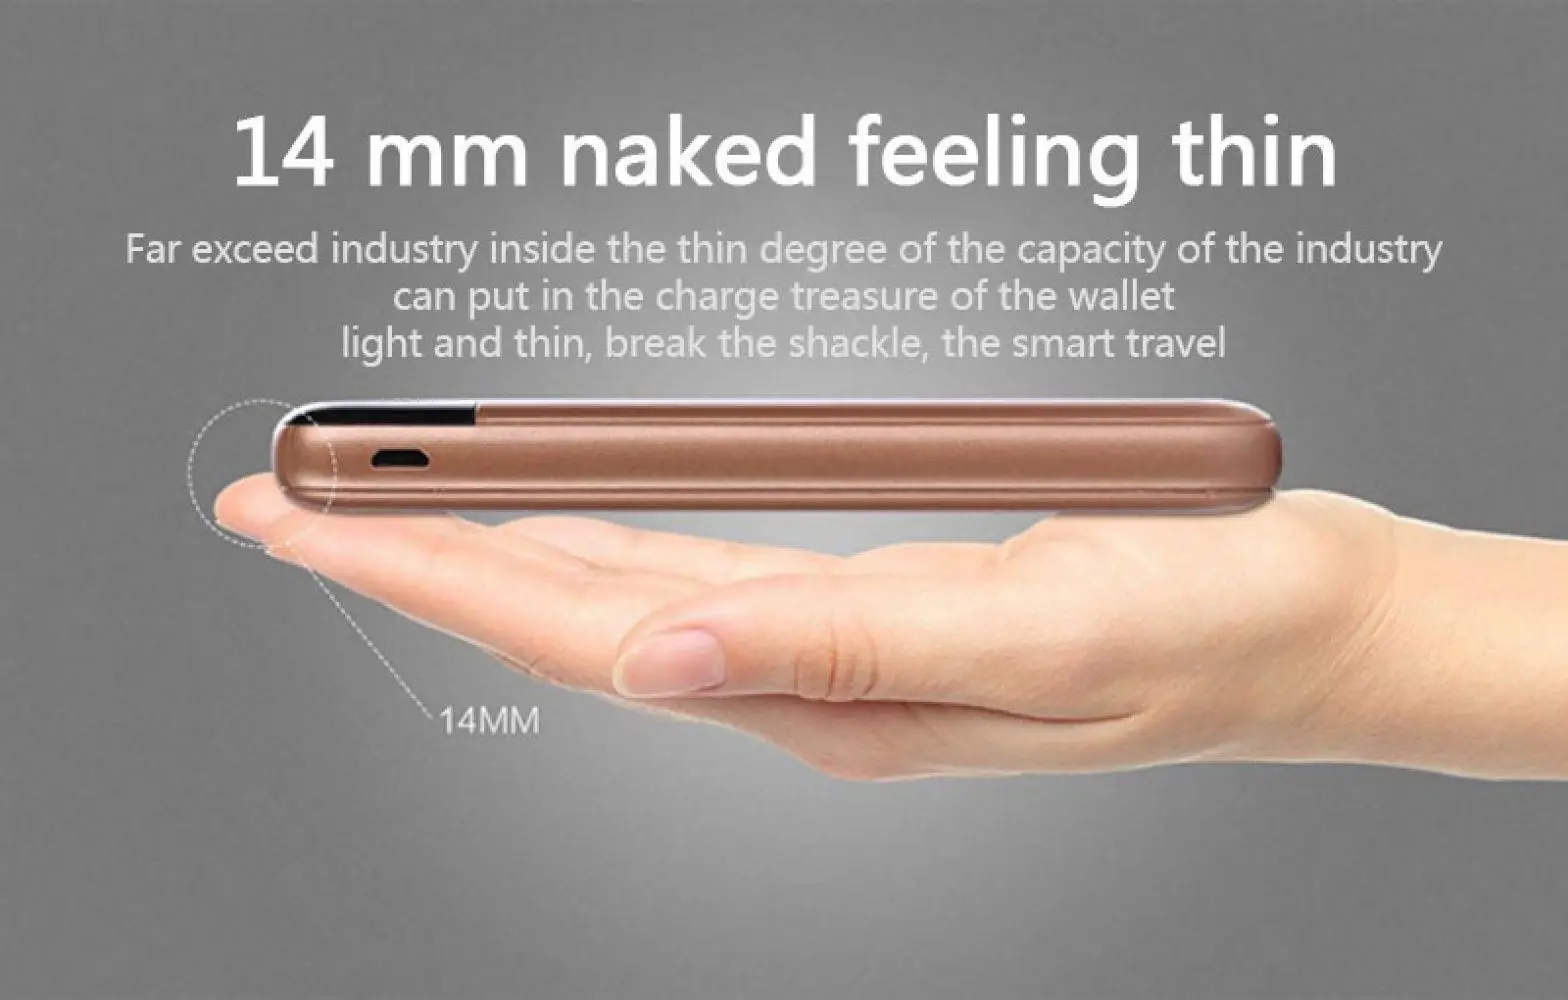 30000 мАч Внешний аккумулятор внешний аккумулятор 2 USB светодиодный внешний аккумулятор портативное зарядное устройство для мобильного телефона для Xiaomi Mi iphone samsung